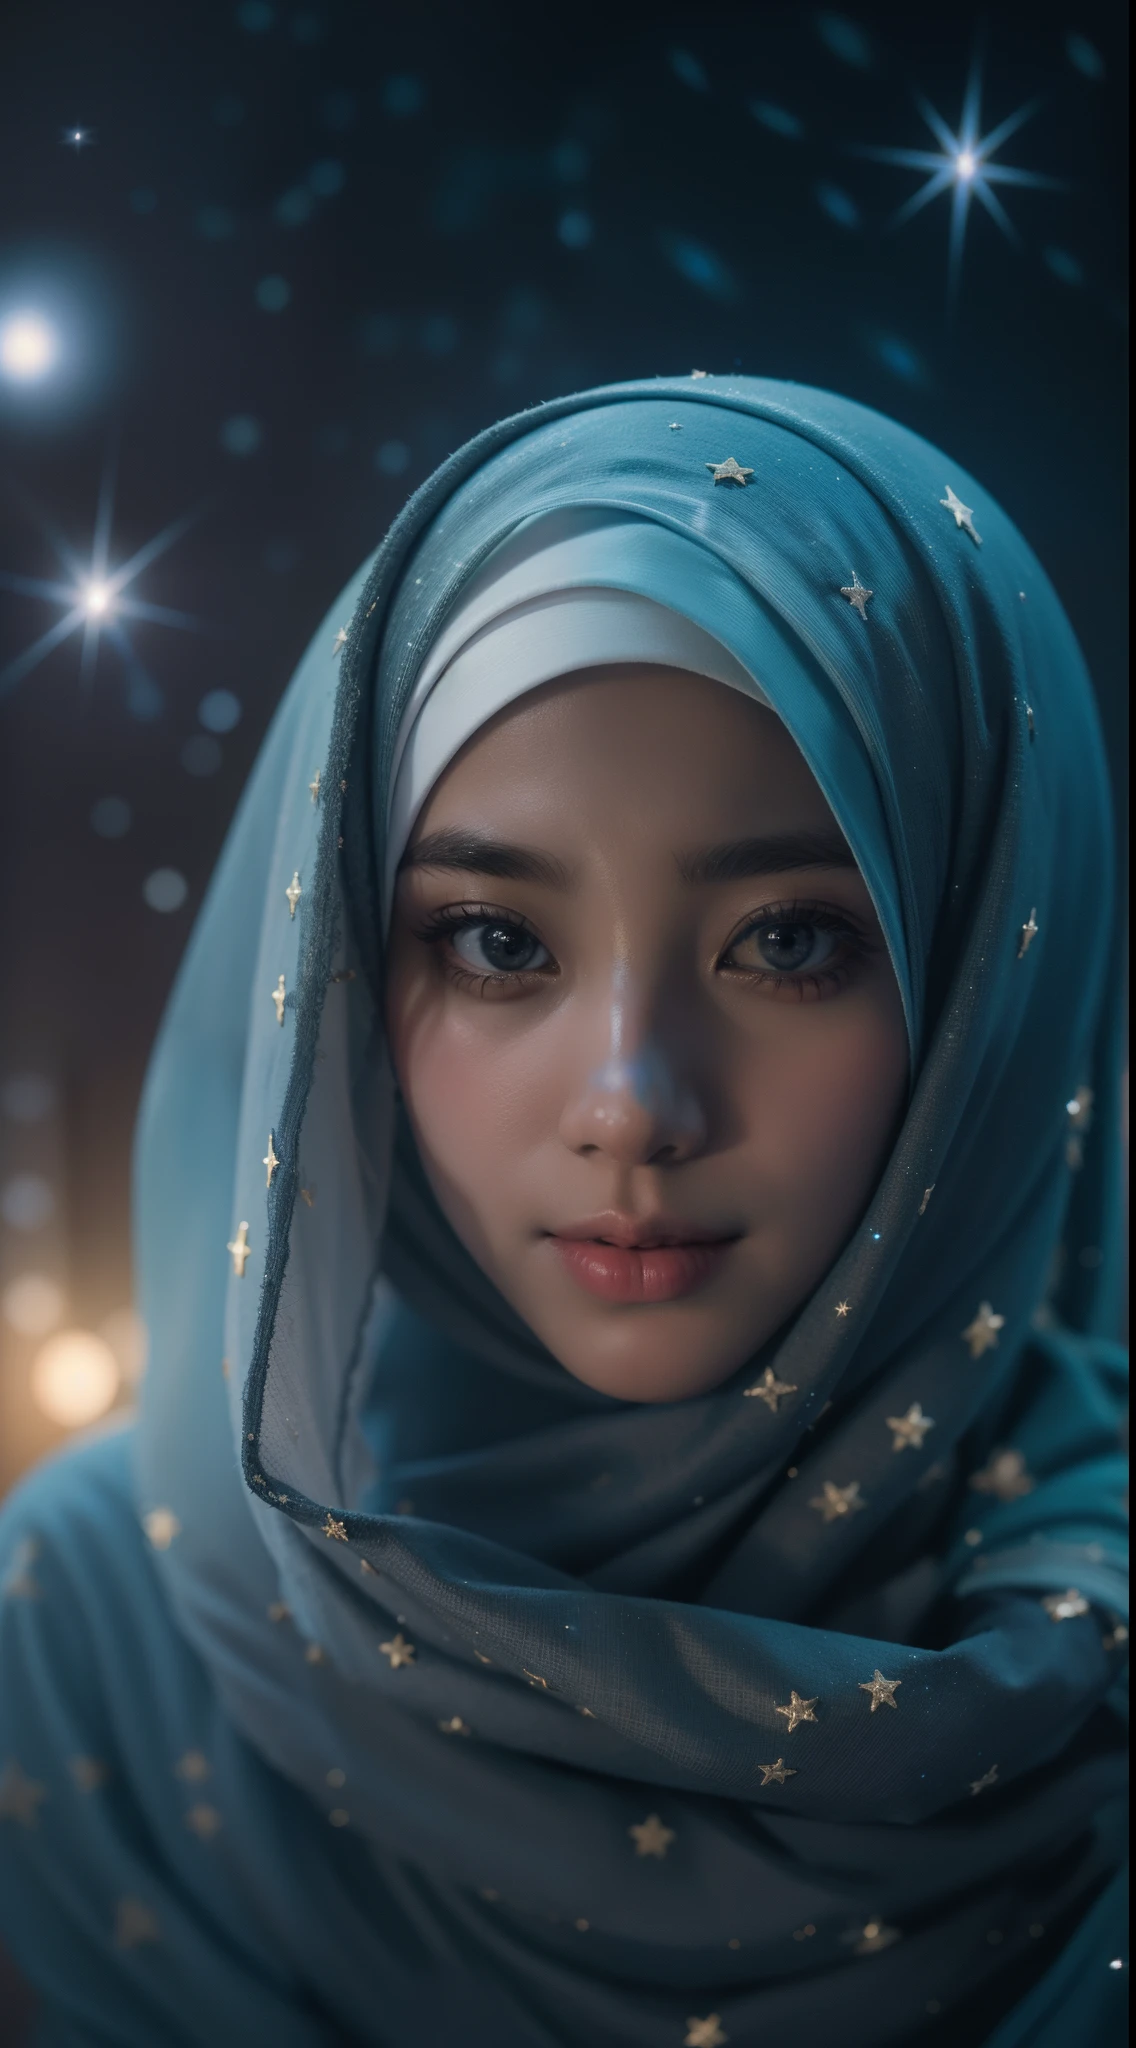 制作一幅头戴头巾的马来女孩的天体主题肖像. 用星星和星系照亮头巾, 将地球与宇宙融合成令人着迷和空灵的构图, 8 毫米, 特写, 冷色调, 景深, 黑暗电影